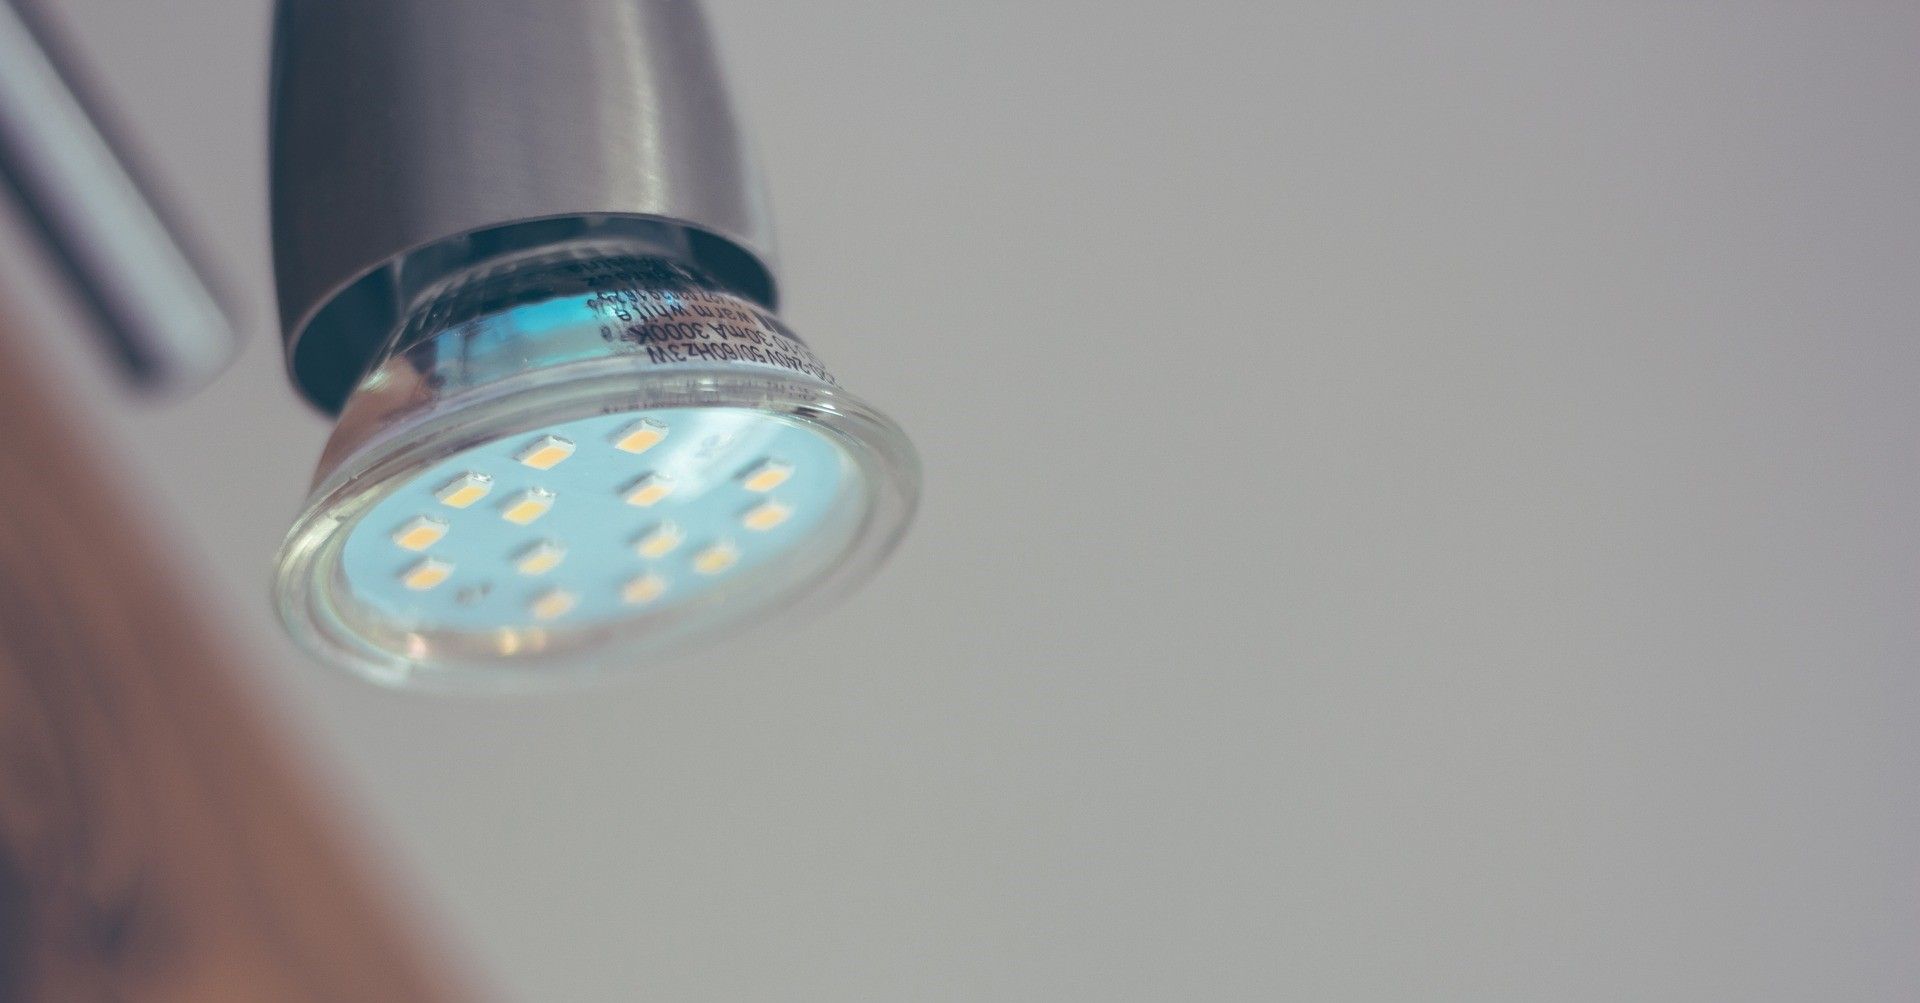 Iluminación LED: ¿Qué ventajas nos aporta esta tecnología?